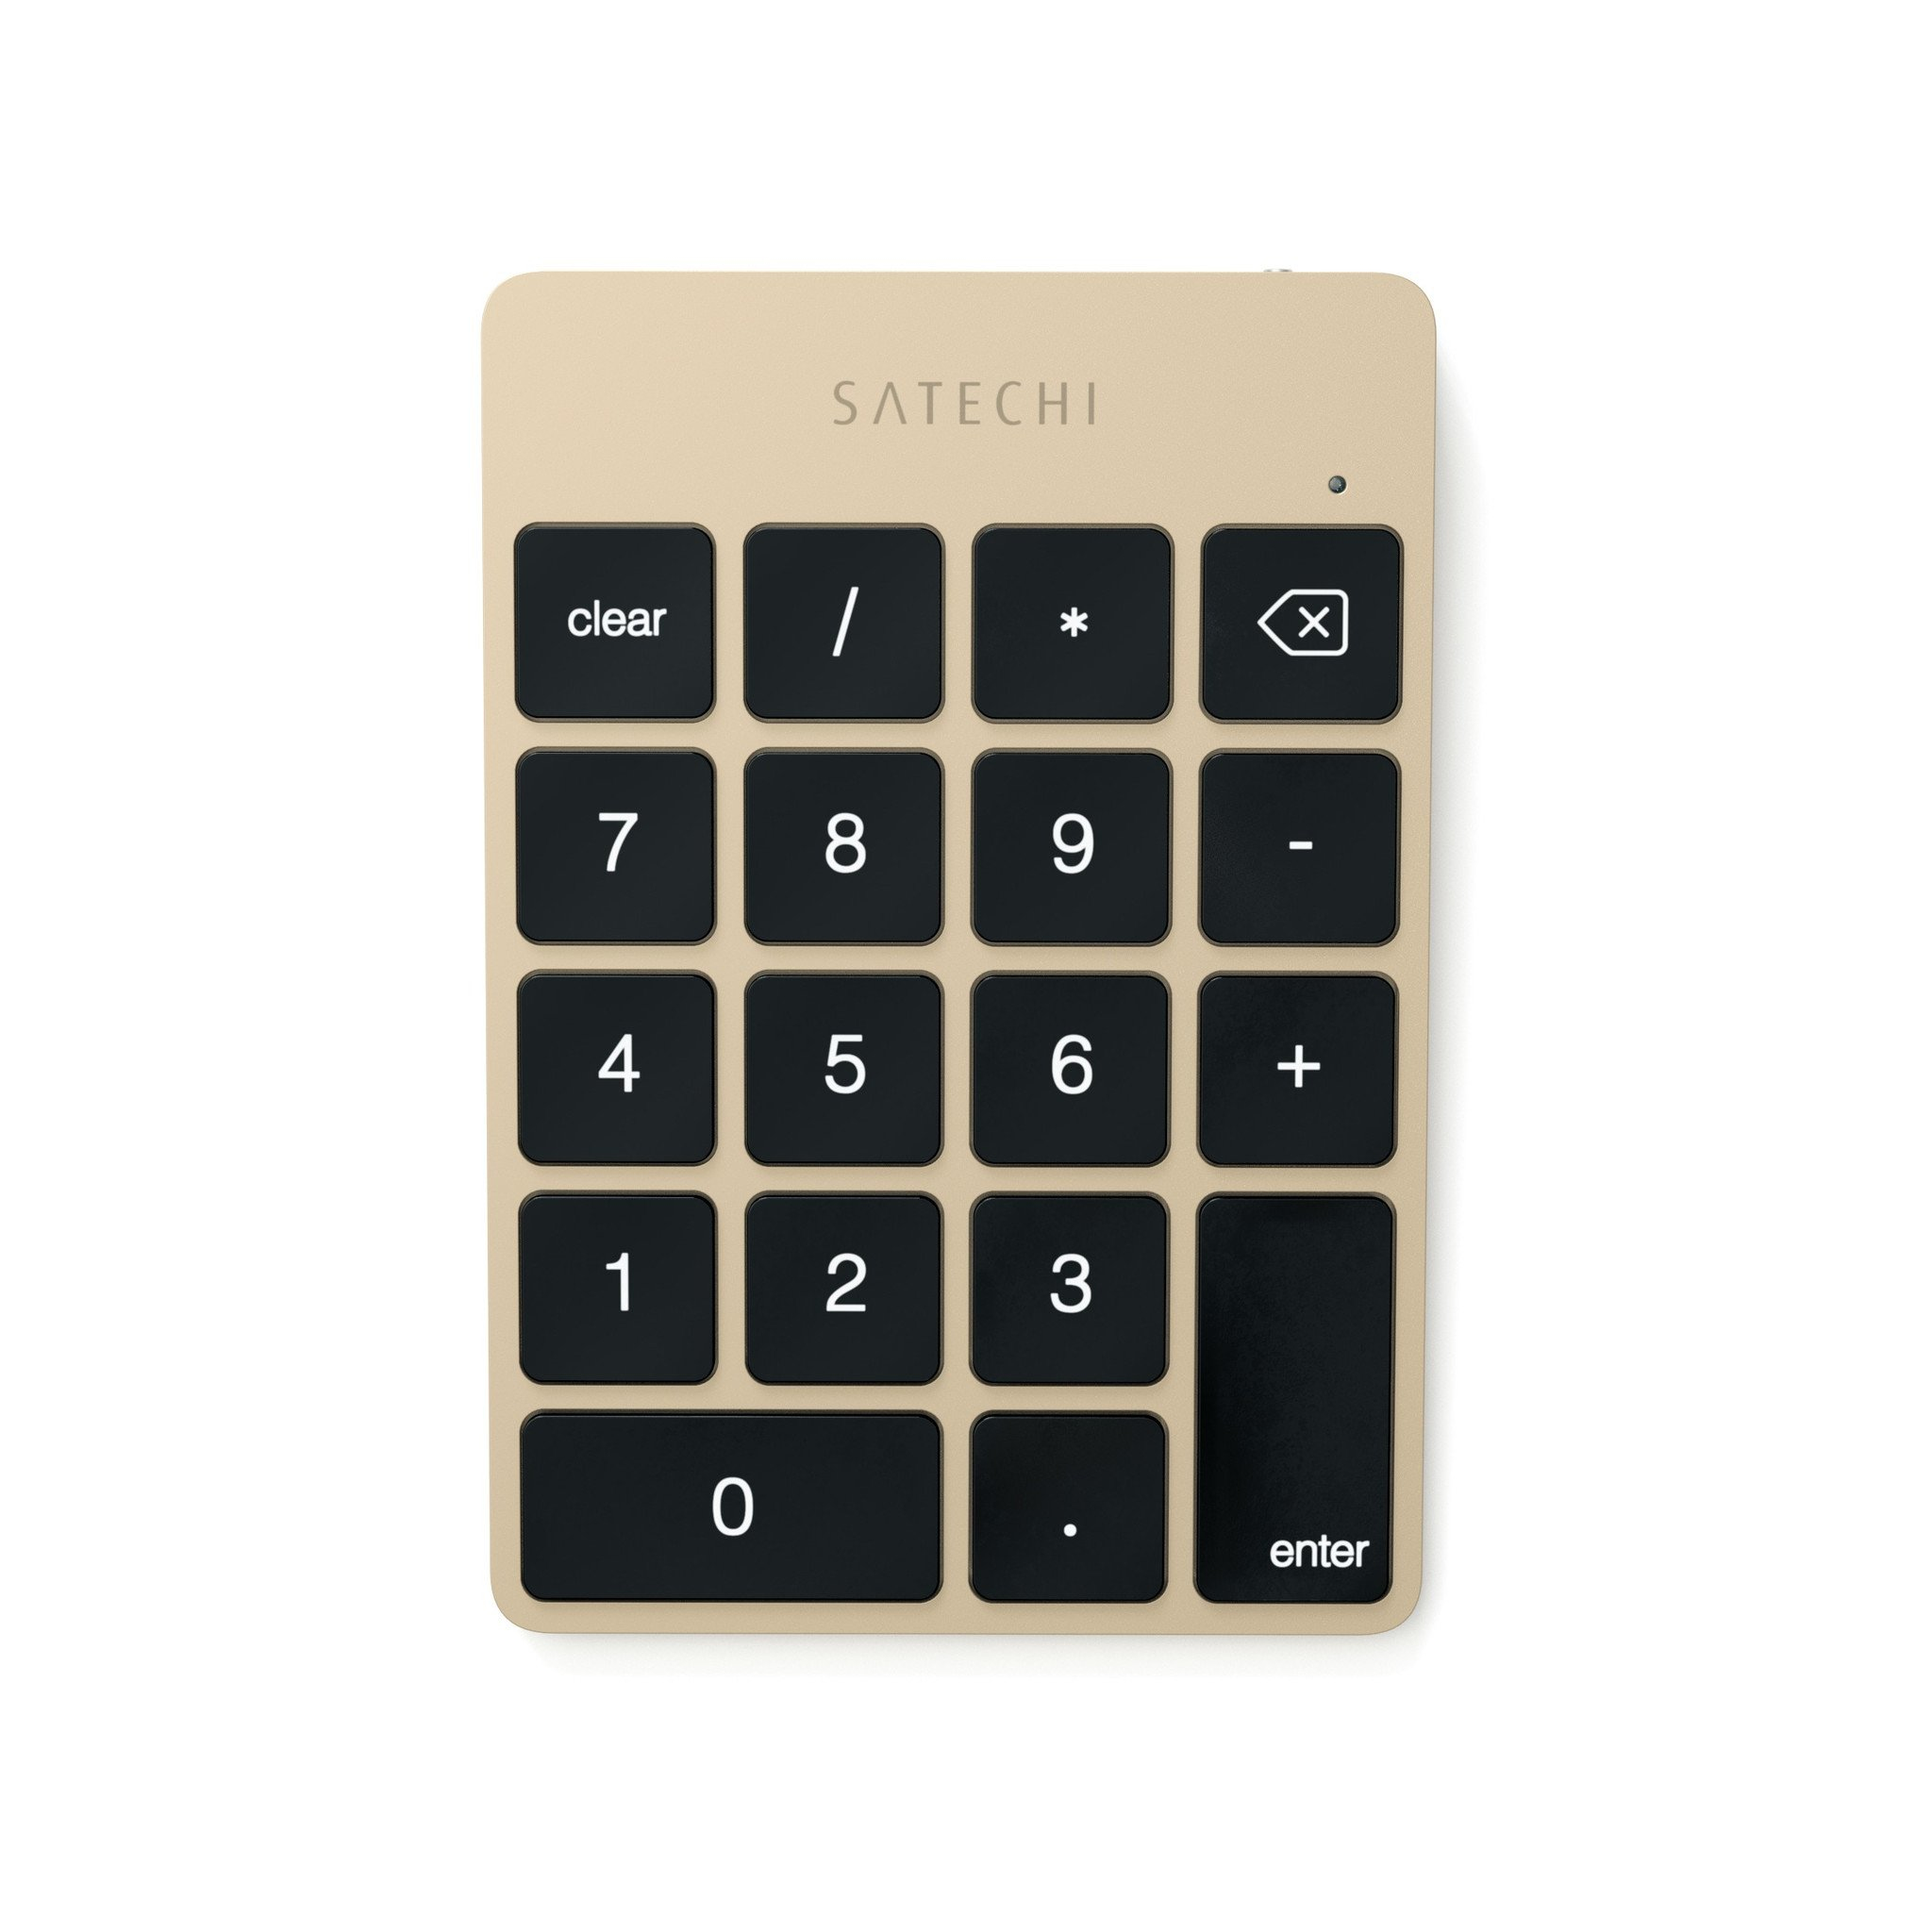 لوحة مفاتيح لاسلكية رفيعة من ساتيتشي باللون الذهبي